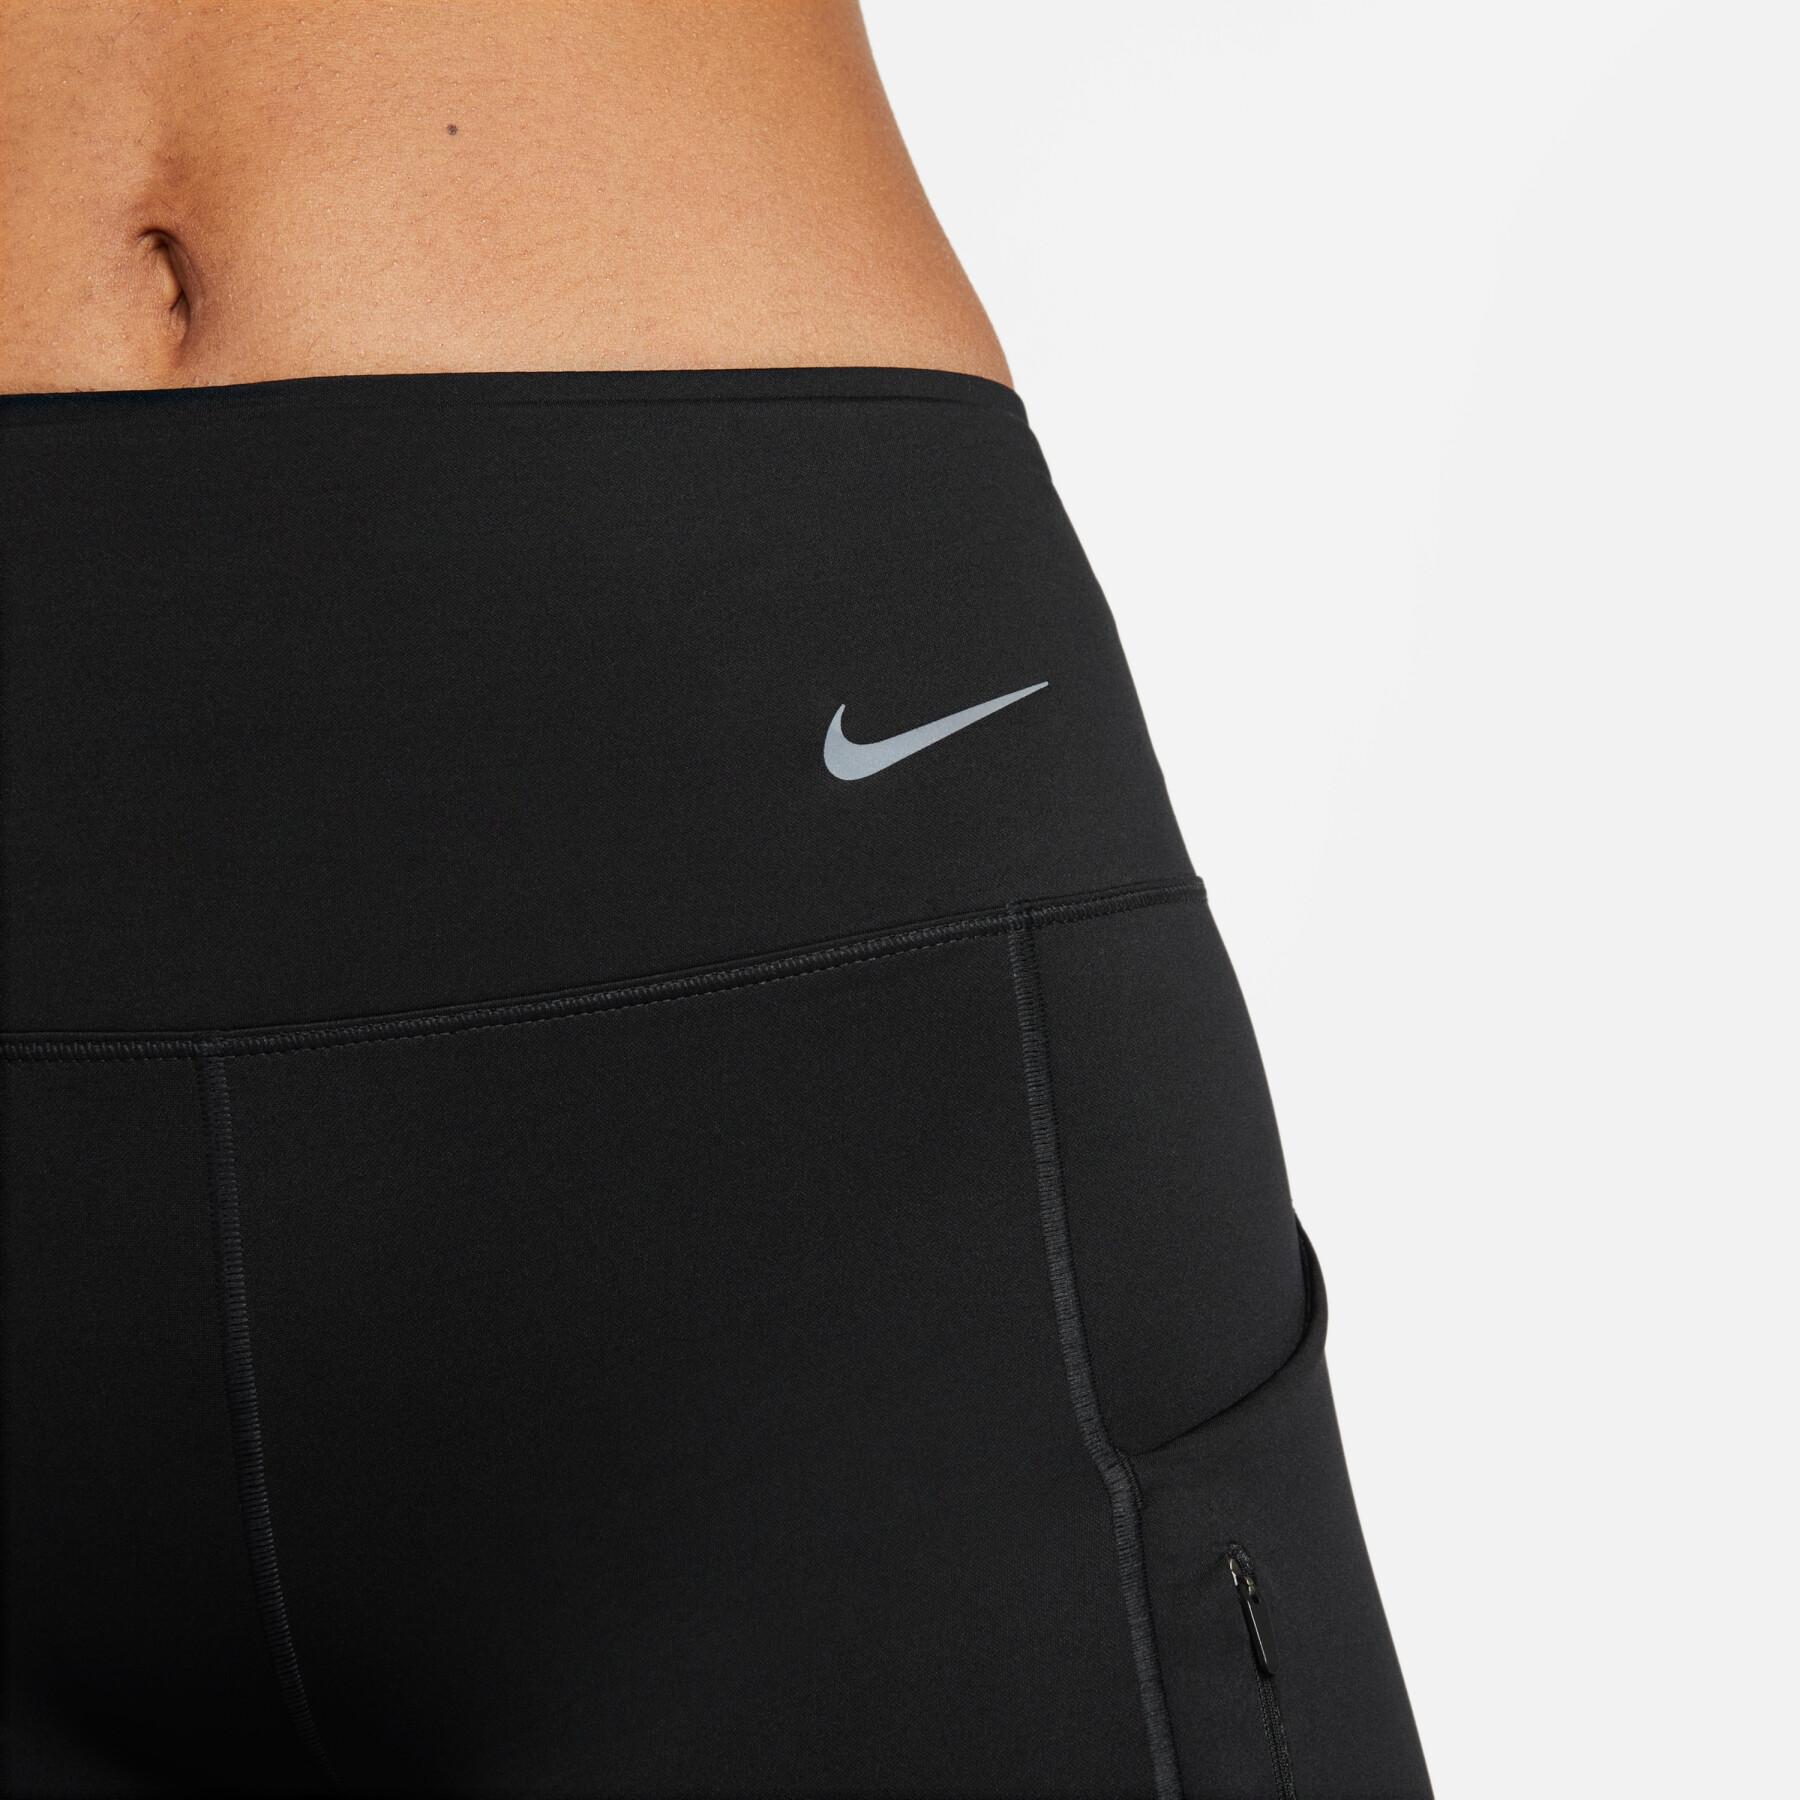 Women's mid-rise shorts Nike Dri-Fit Go